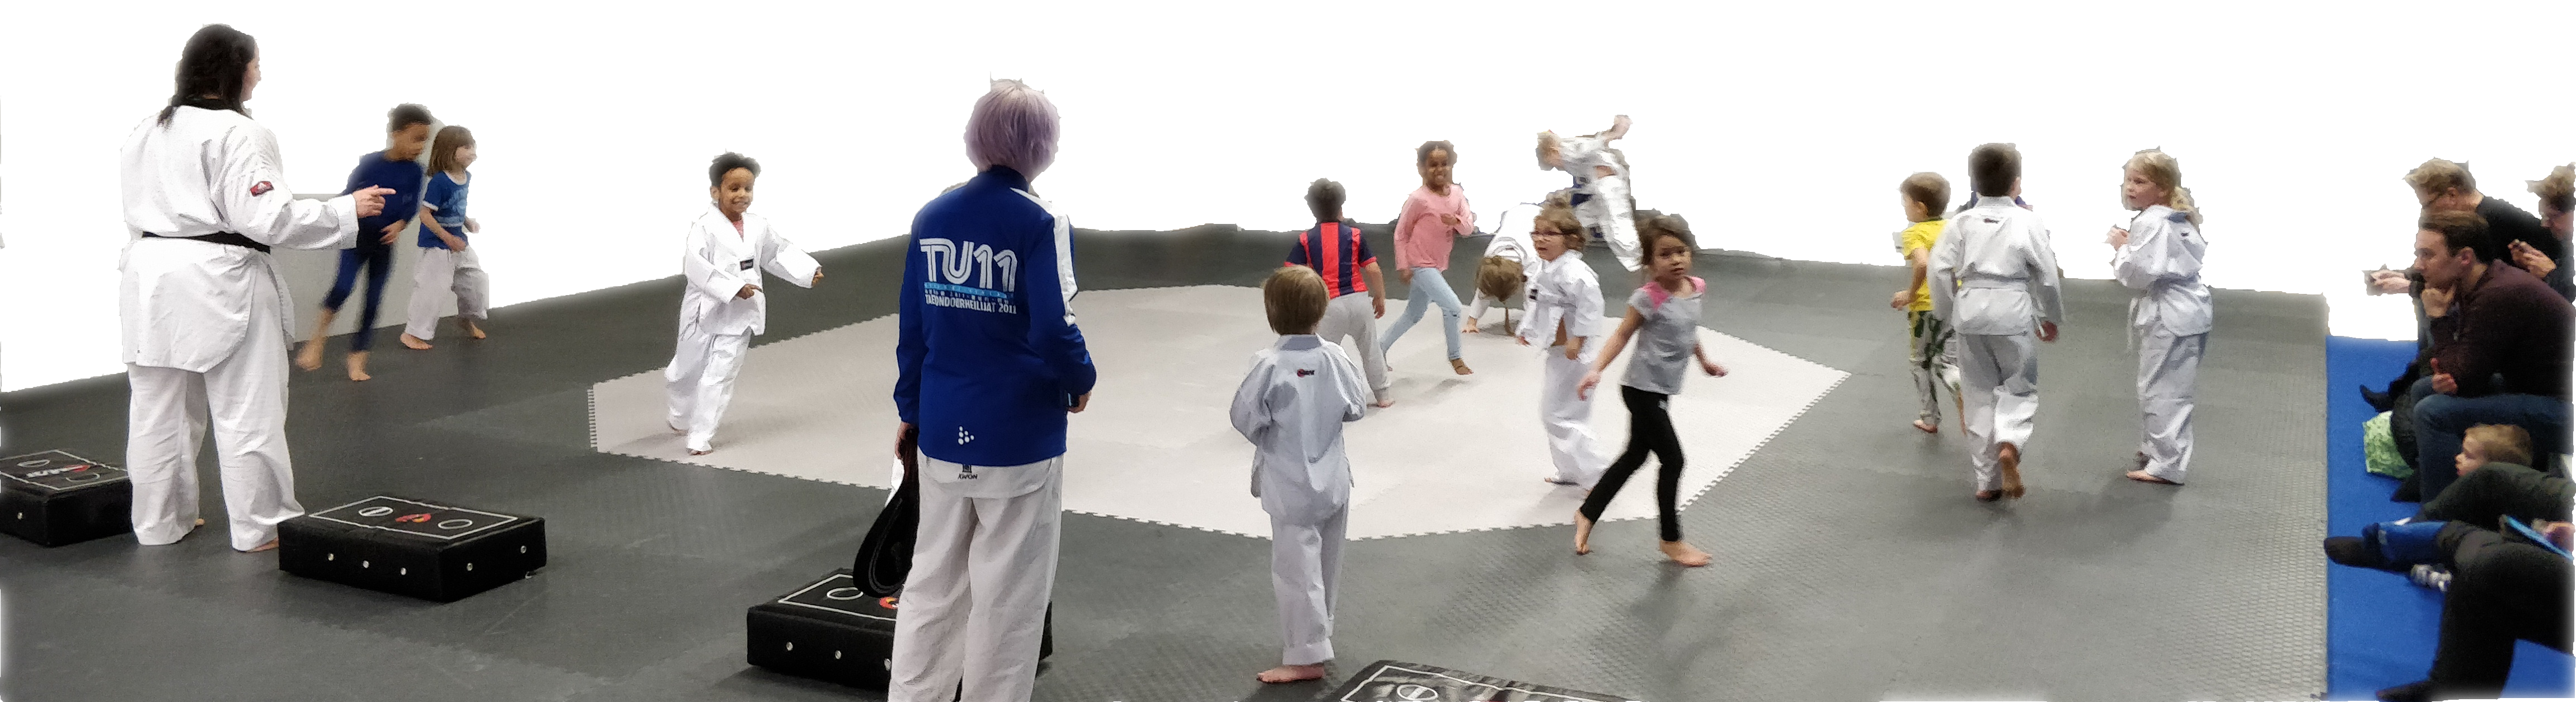 Taekwondo lapset